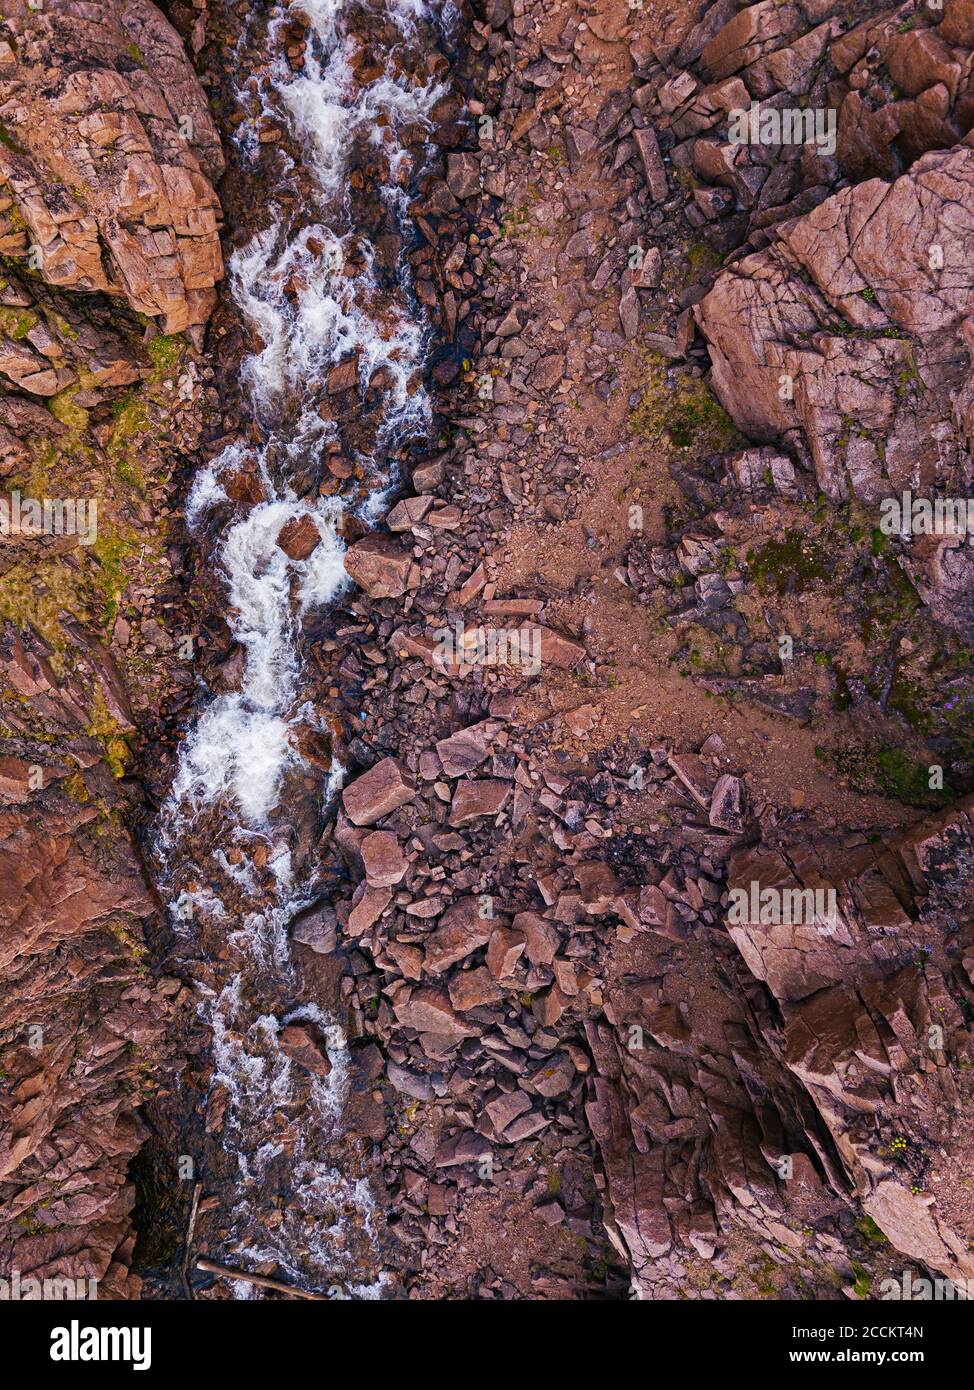 Rusia, Oblast de Murmansk, Teriberka, Vista aérea de la cascada que fluye por la superficie rocosa Foto de stock